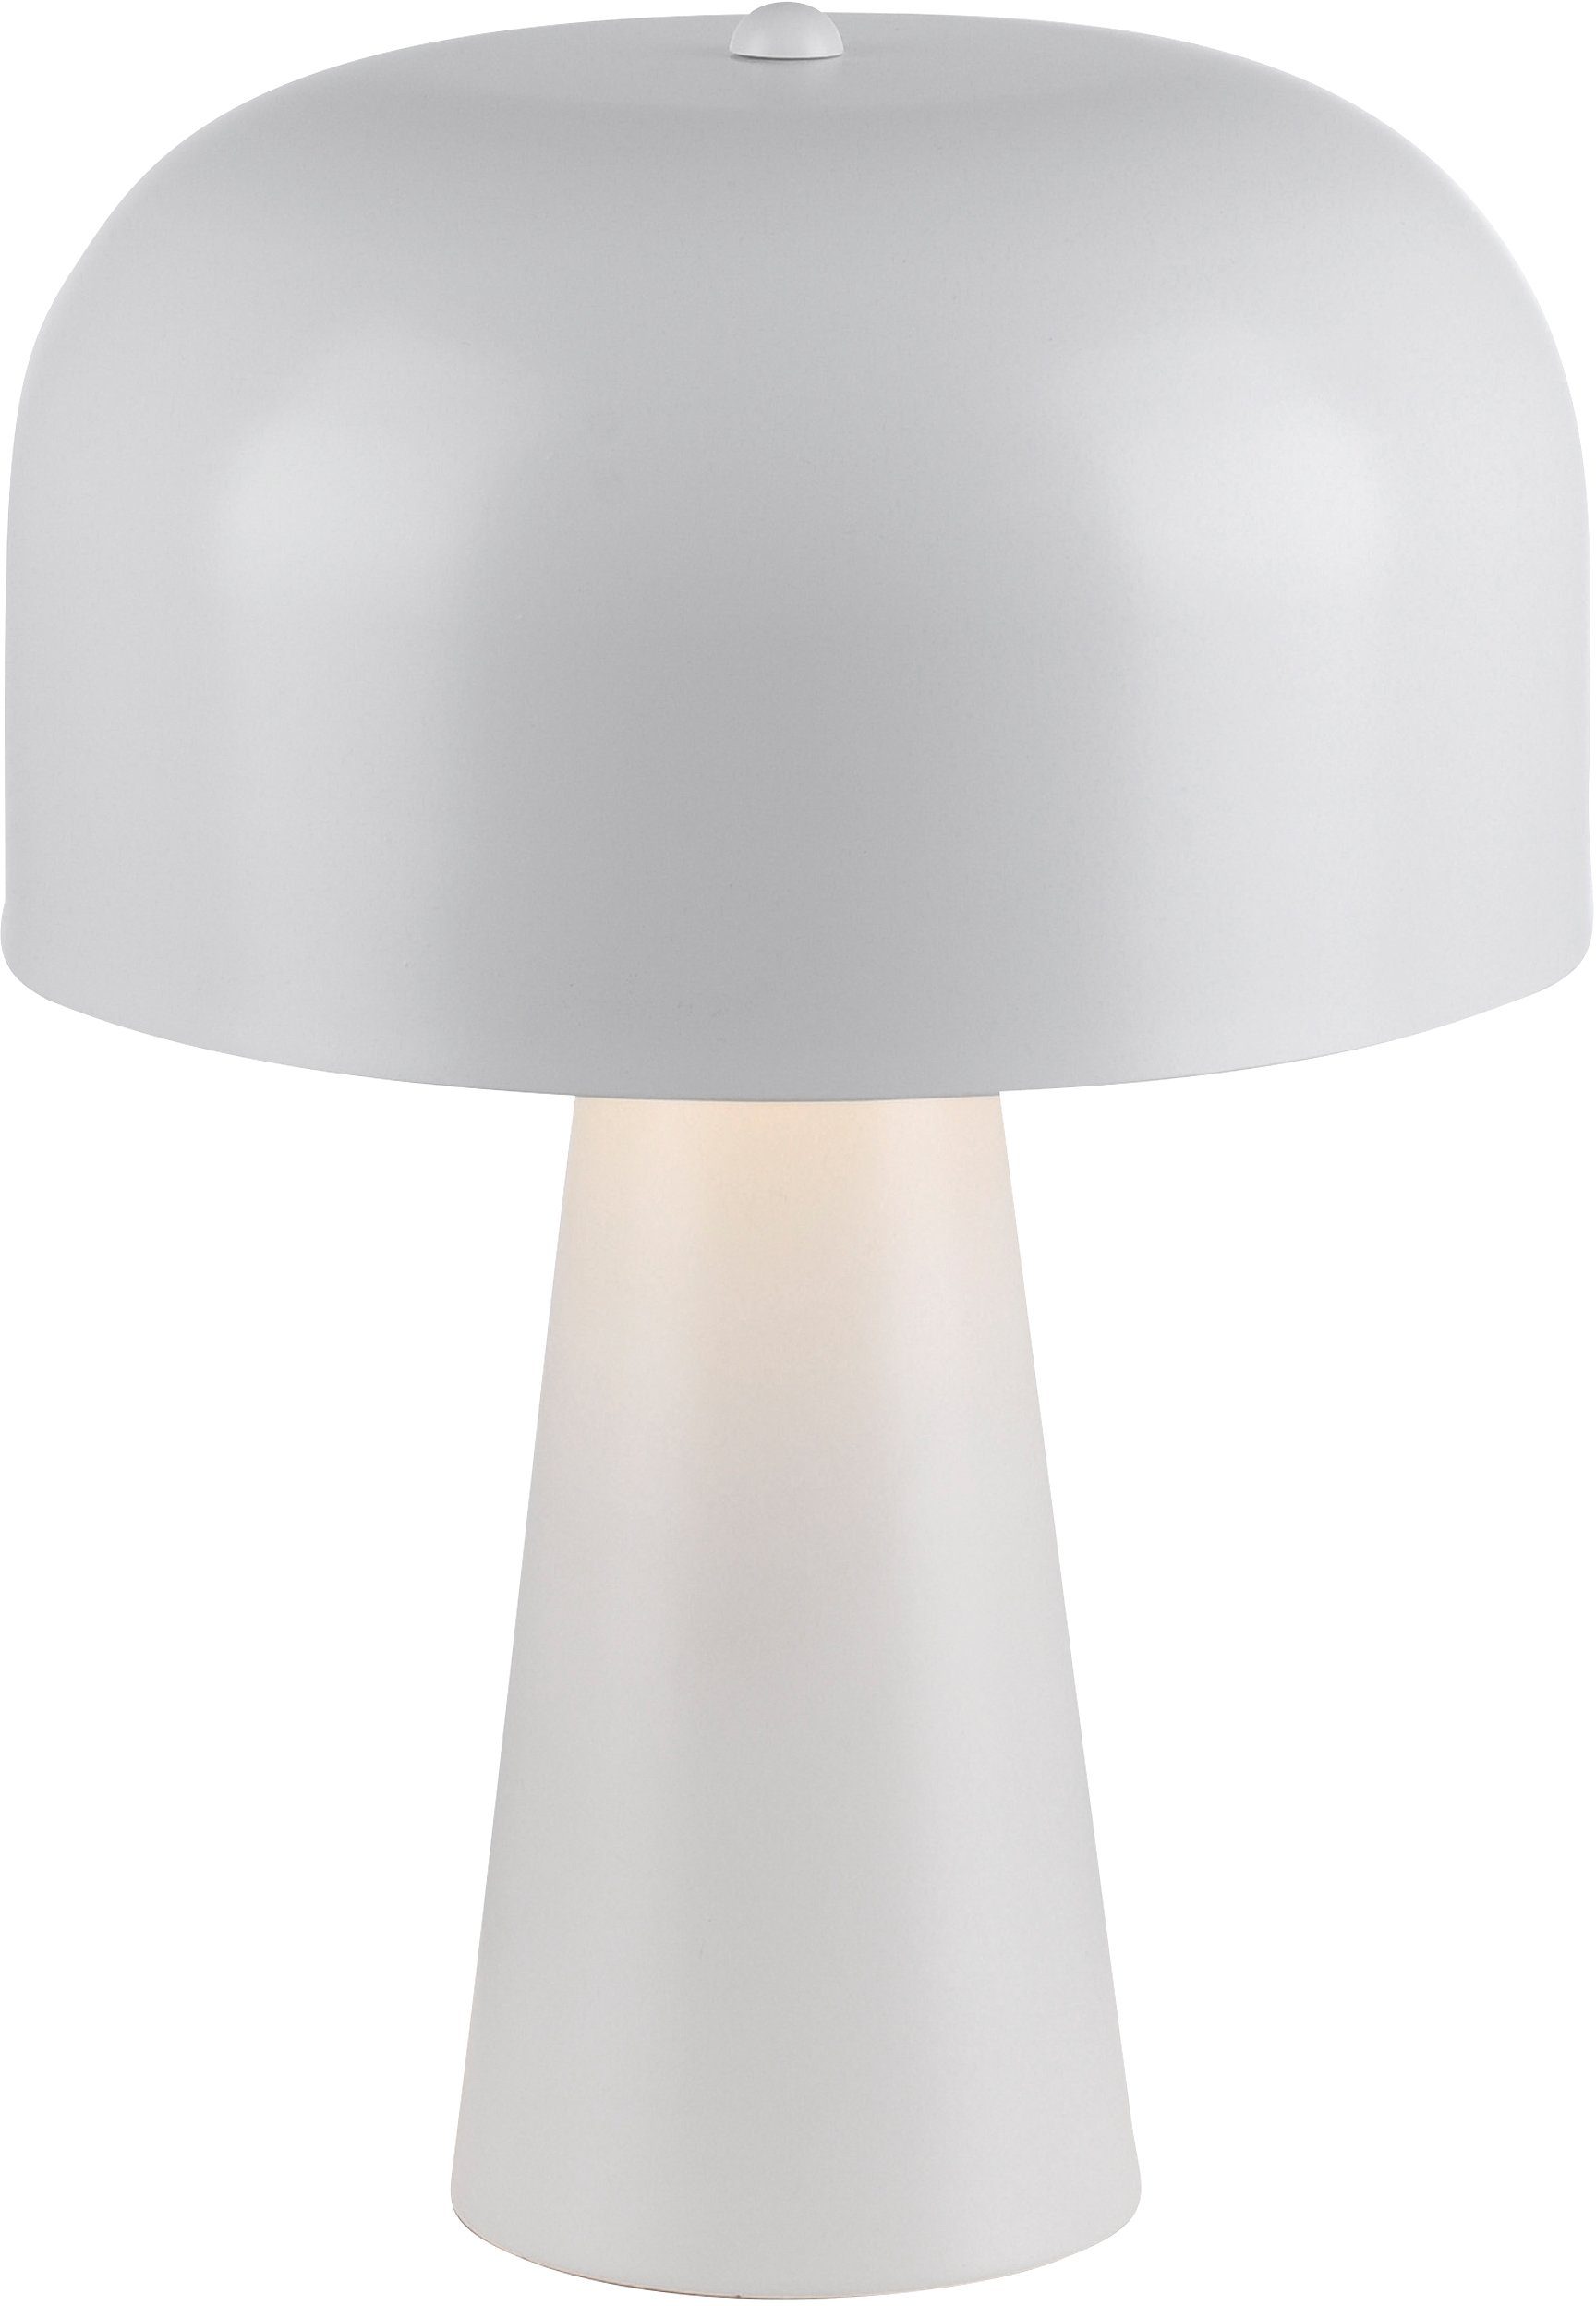 Tischlampe mit matt Olier, Pilzlampe Rue Ein-/Ausschalter, Schnurschalter, ohne Leuchtmittel, Tischleuchte weiß andas